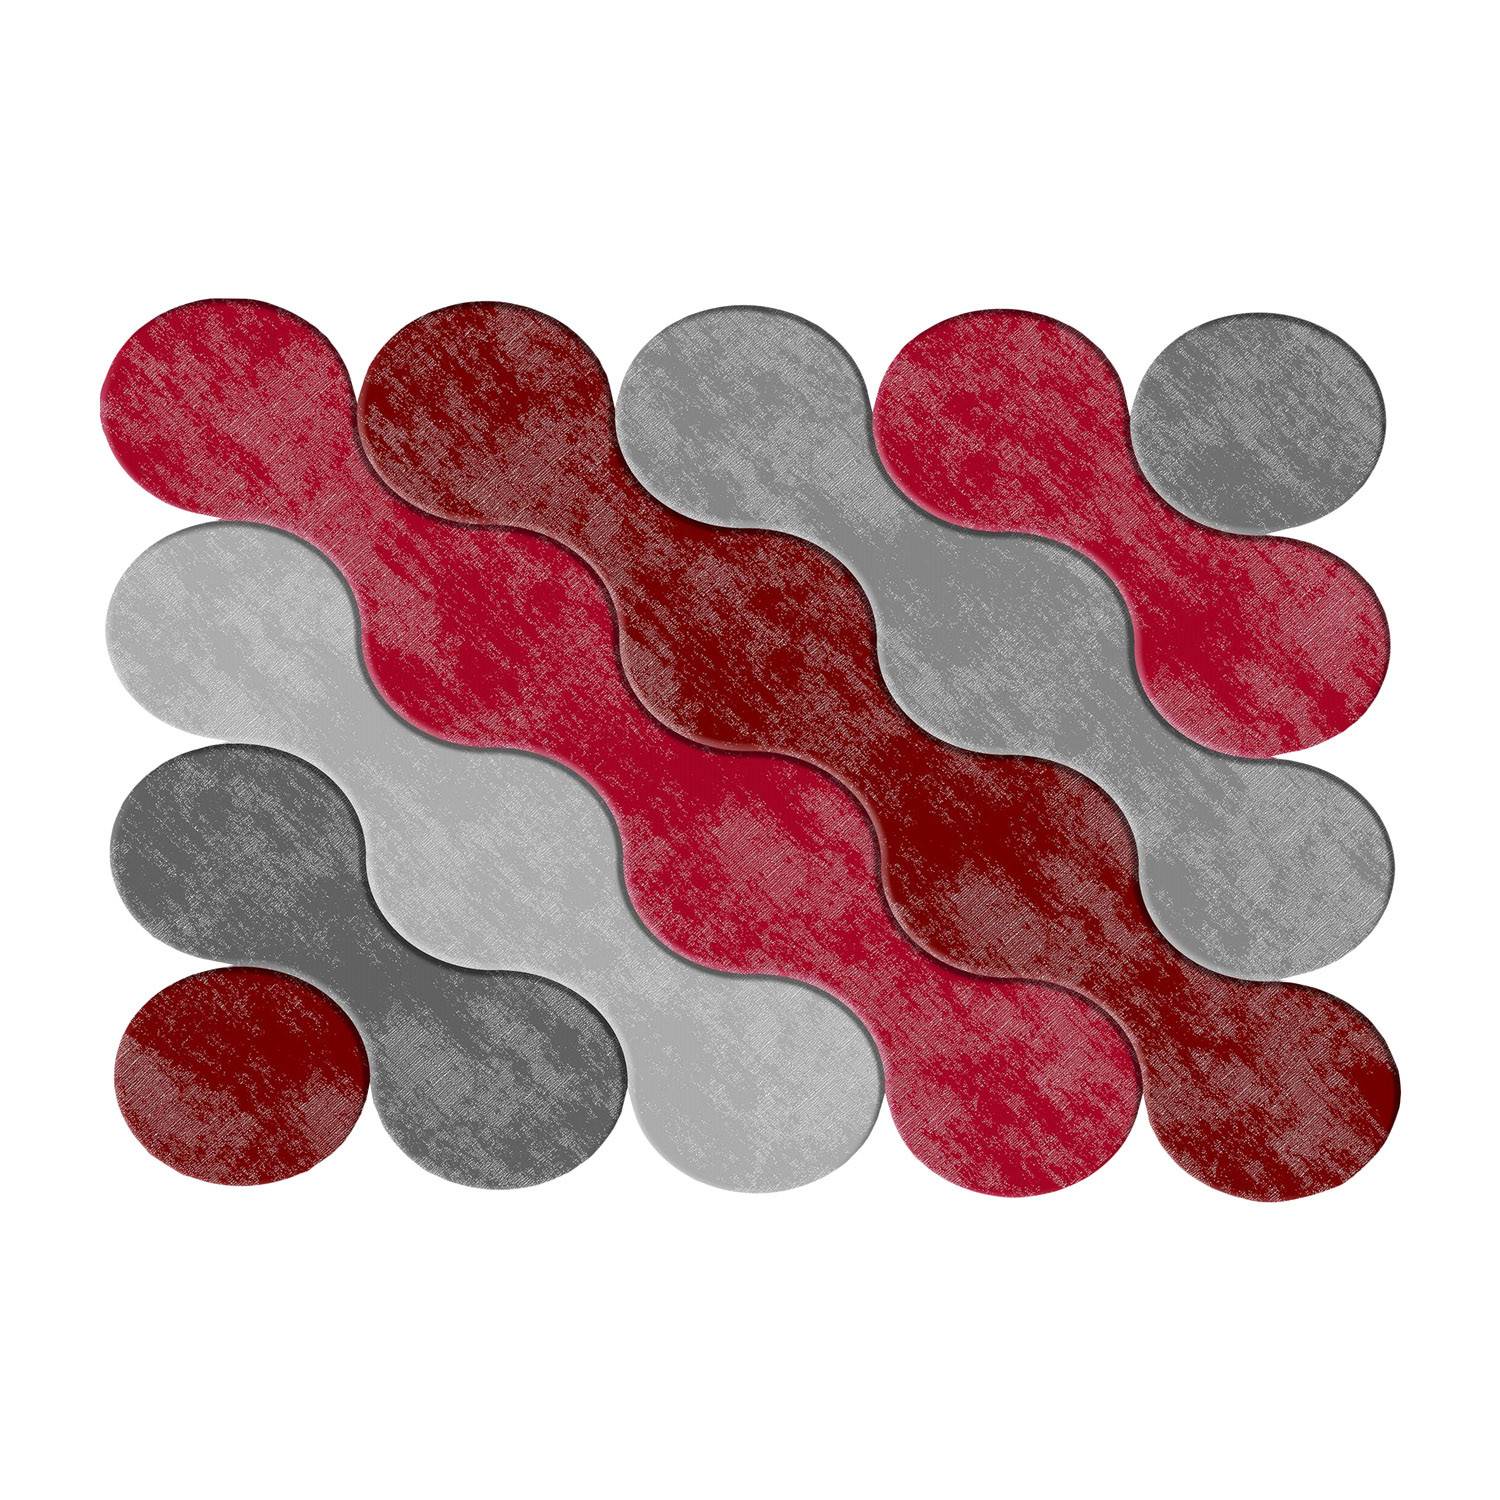 Feraron Teppich 160x230cm Motiv Kreise kombiniert mit Rot und Grau